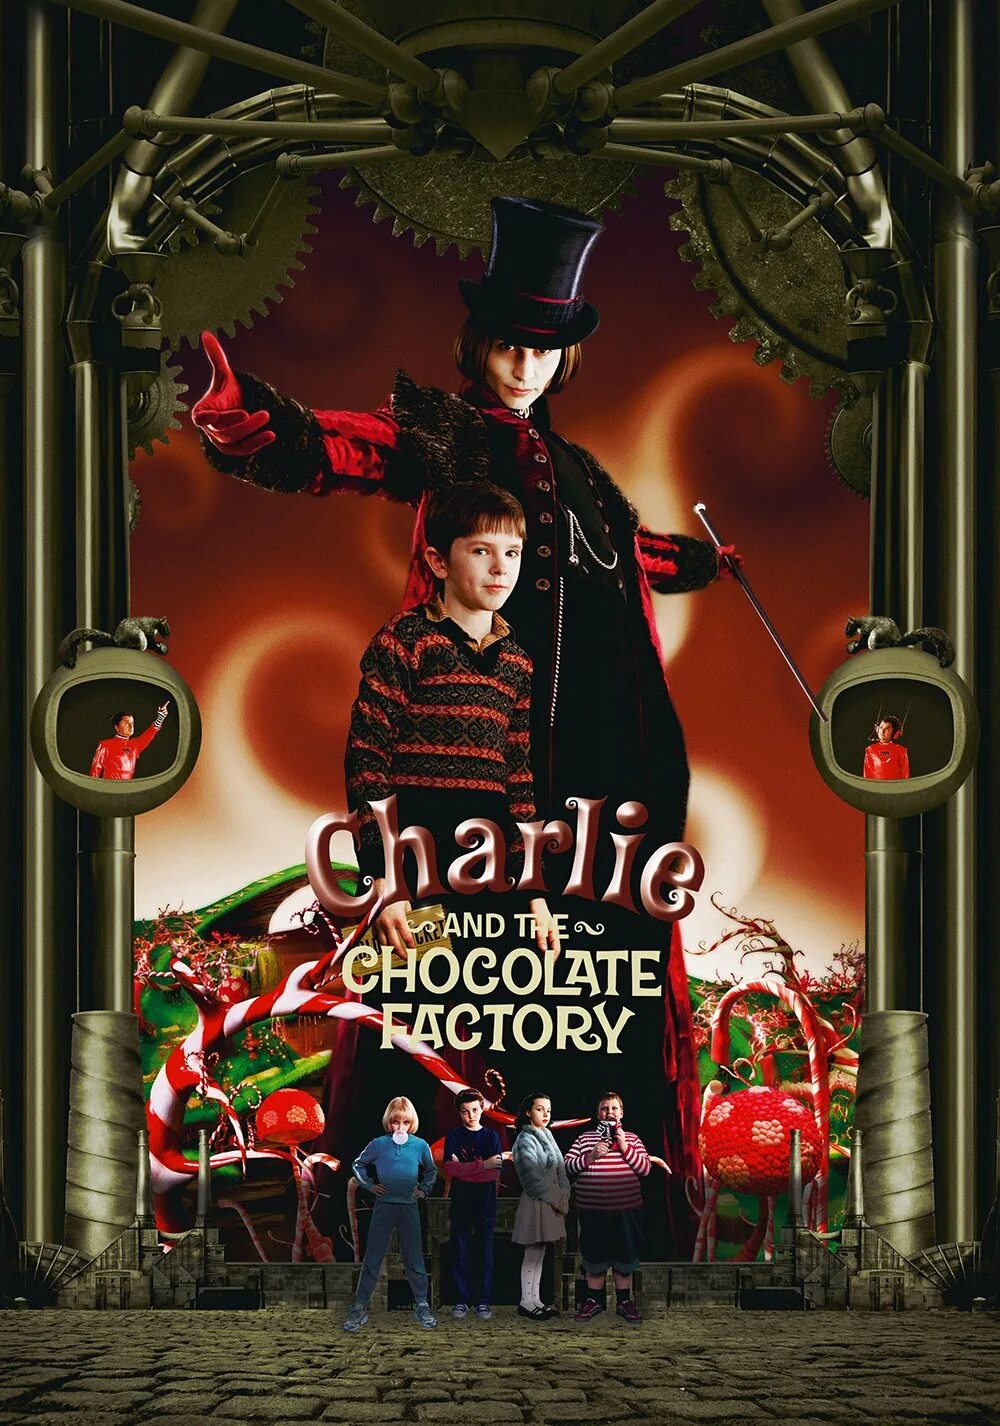 Чарли и шоколадная фабрика содержание. Чарли и шоколадная фабрика 2005. Charlie and the Chocolate Factory 2005 poster. Тим Бертон Чарли и шоколадная фабрика.